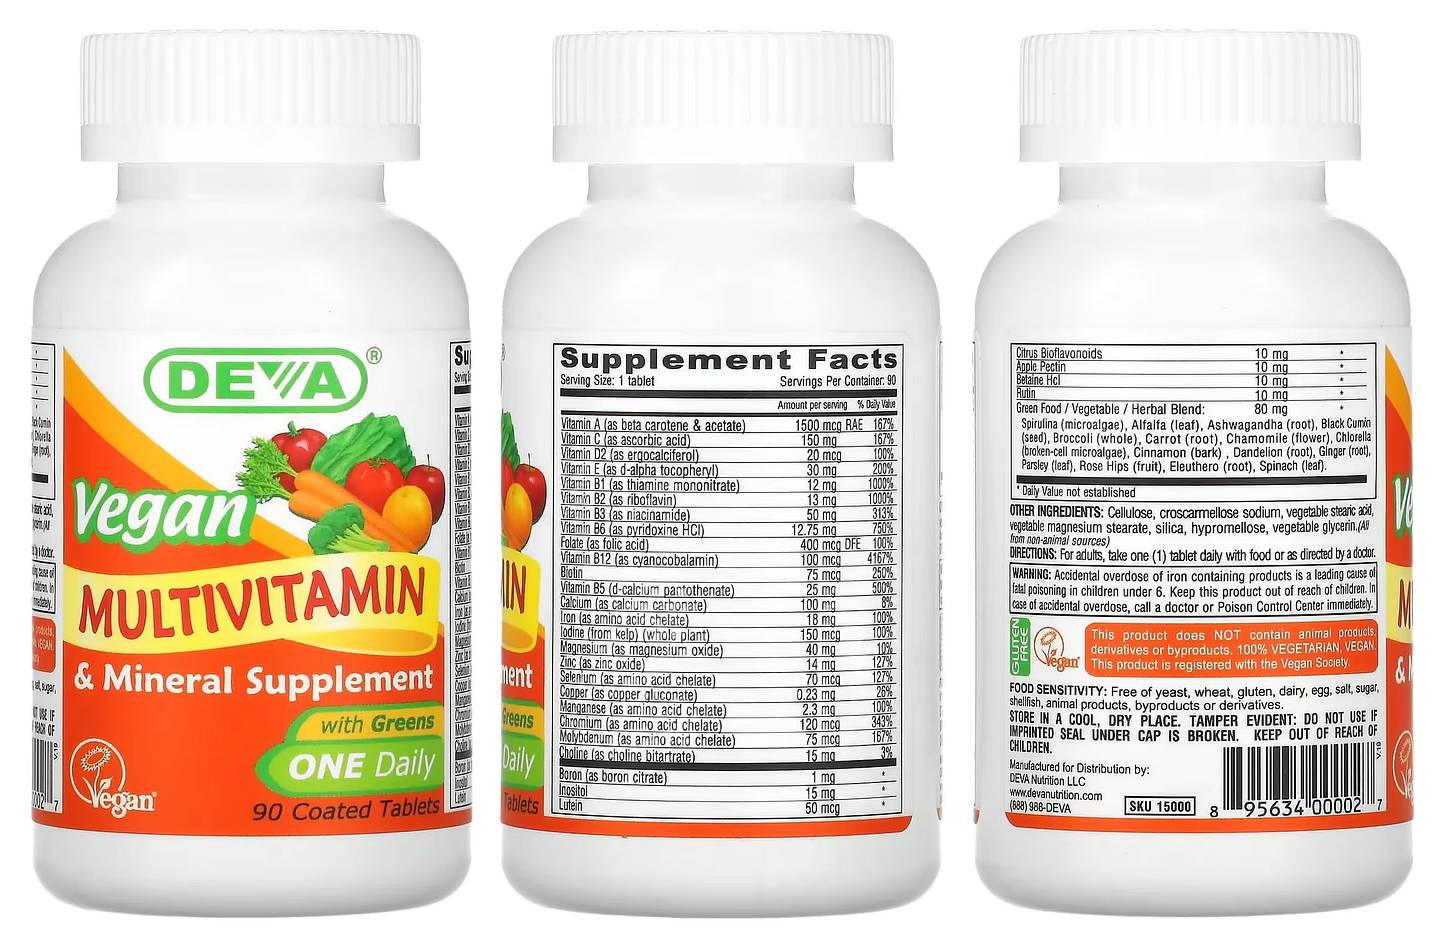 Deva, Vegan Multivitamin & Mineral Supplement packaging